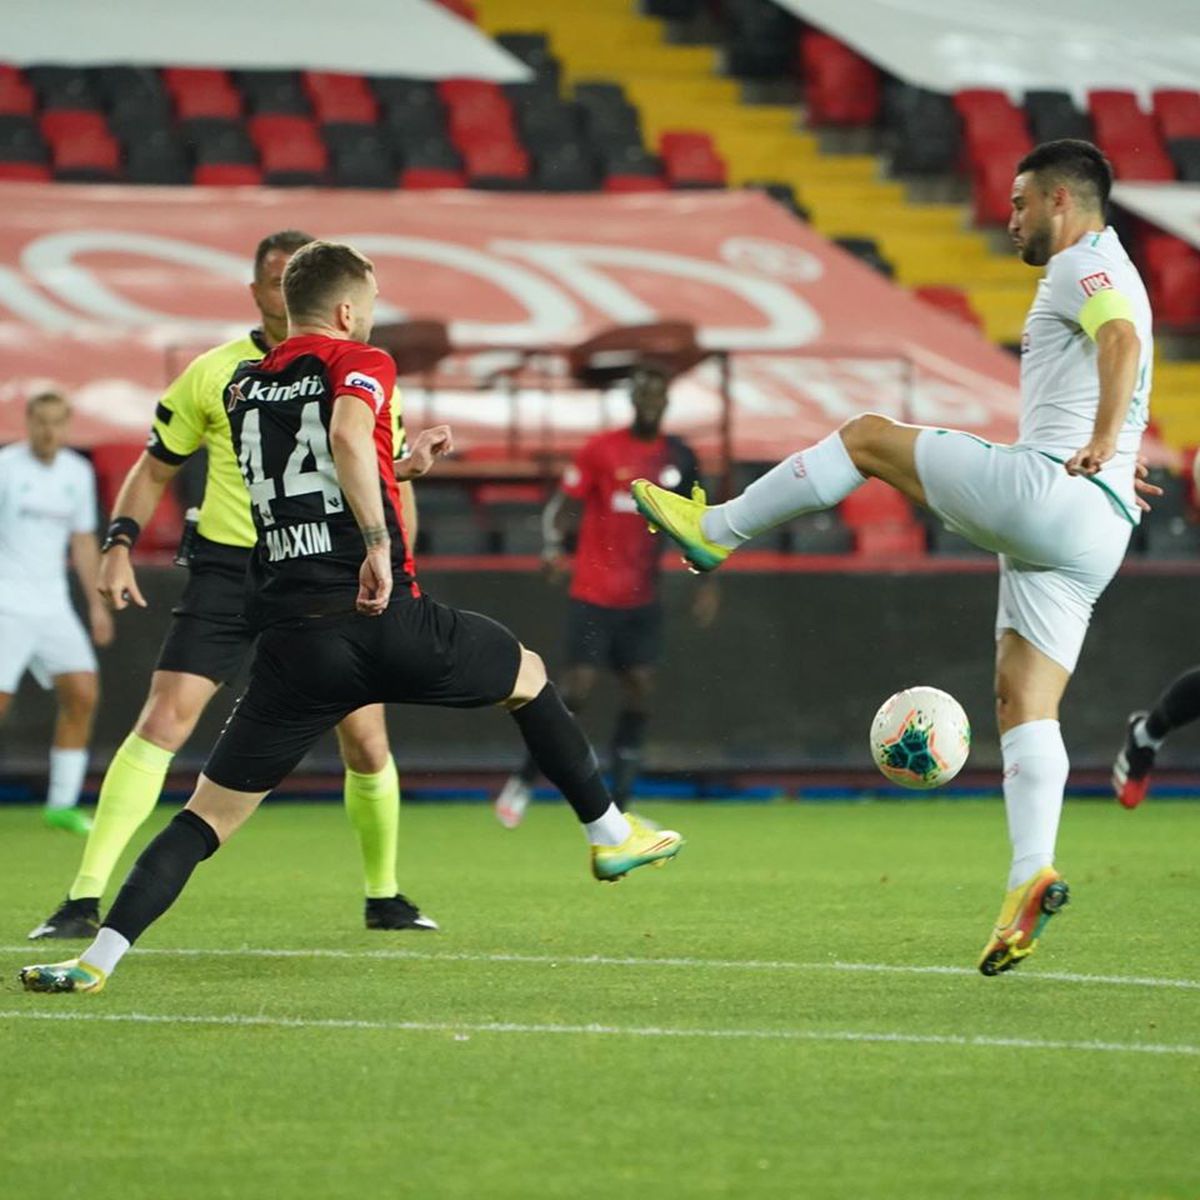 Șumudică, Maxim și Toșca, victorie cu Konyaspor